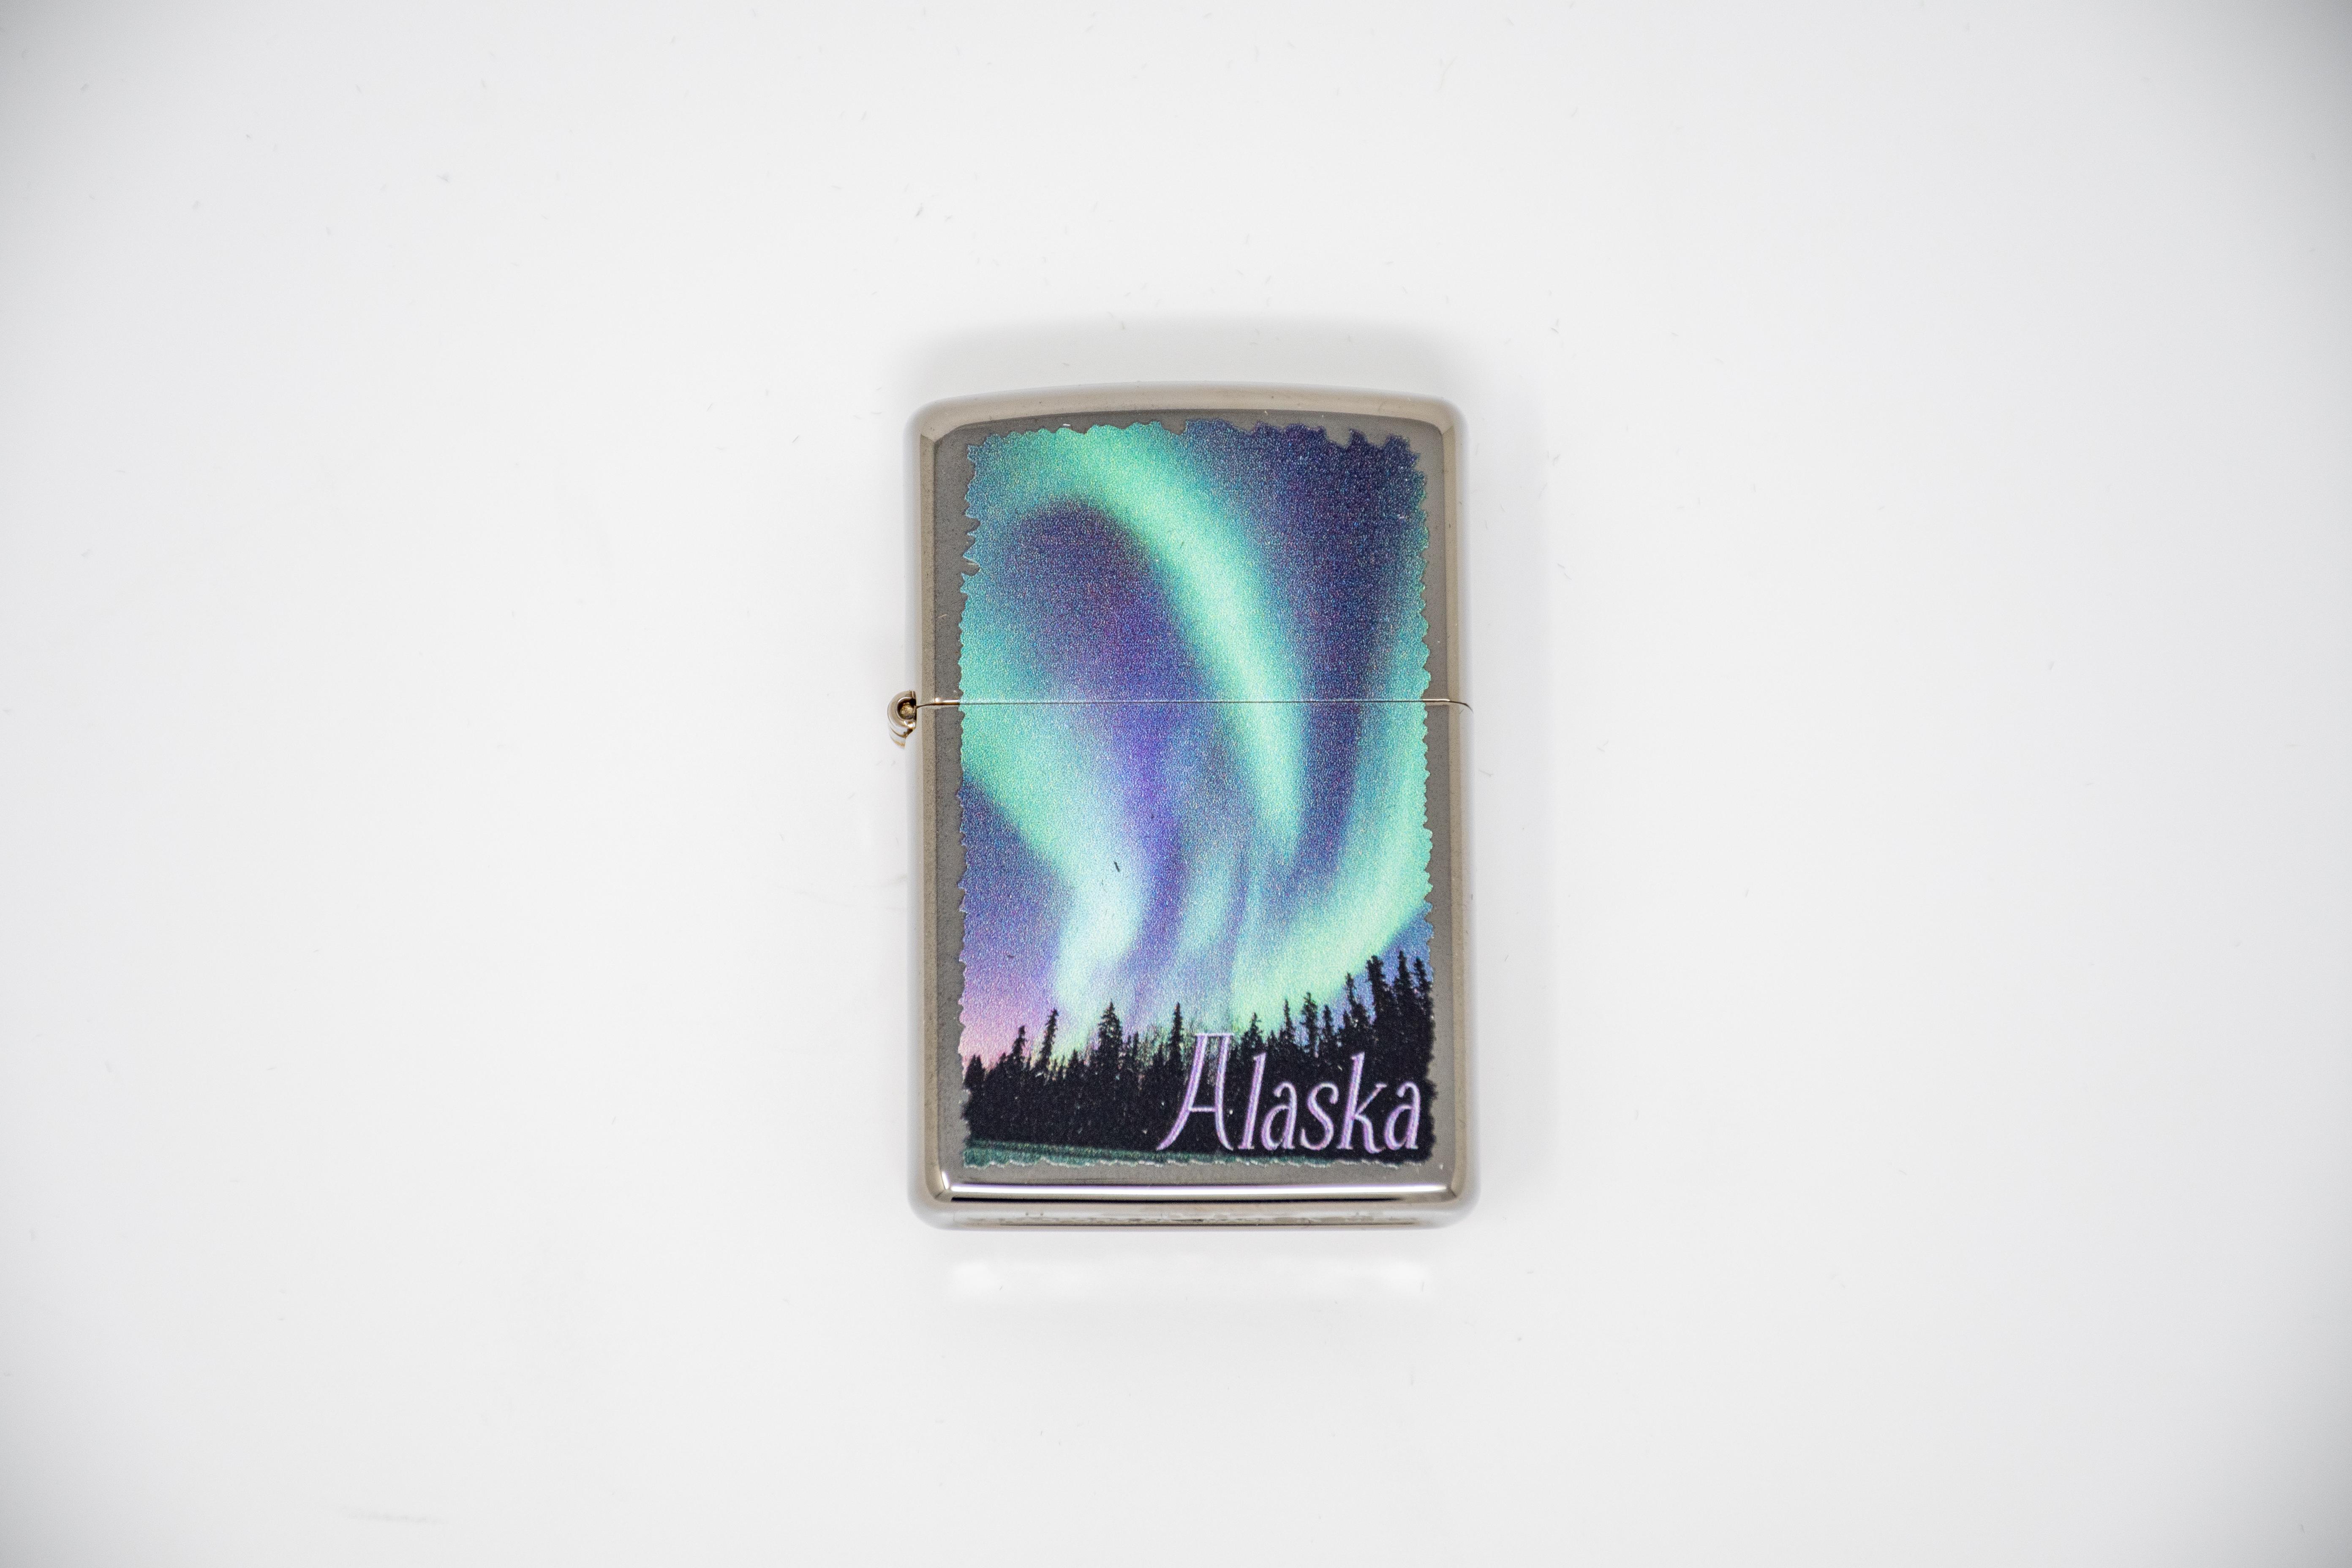  Alaska Zippo Lighter